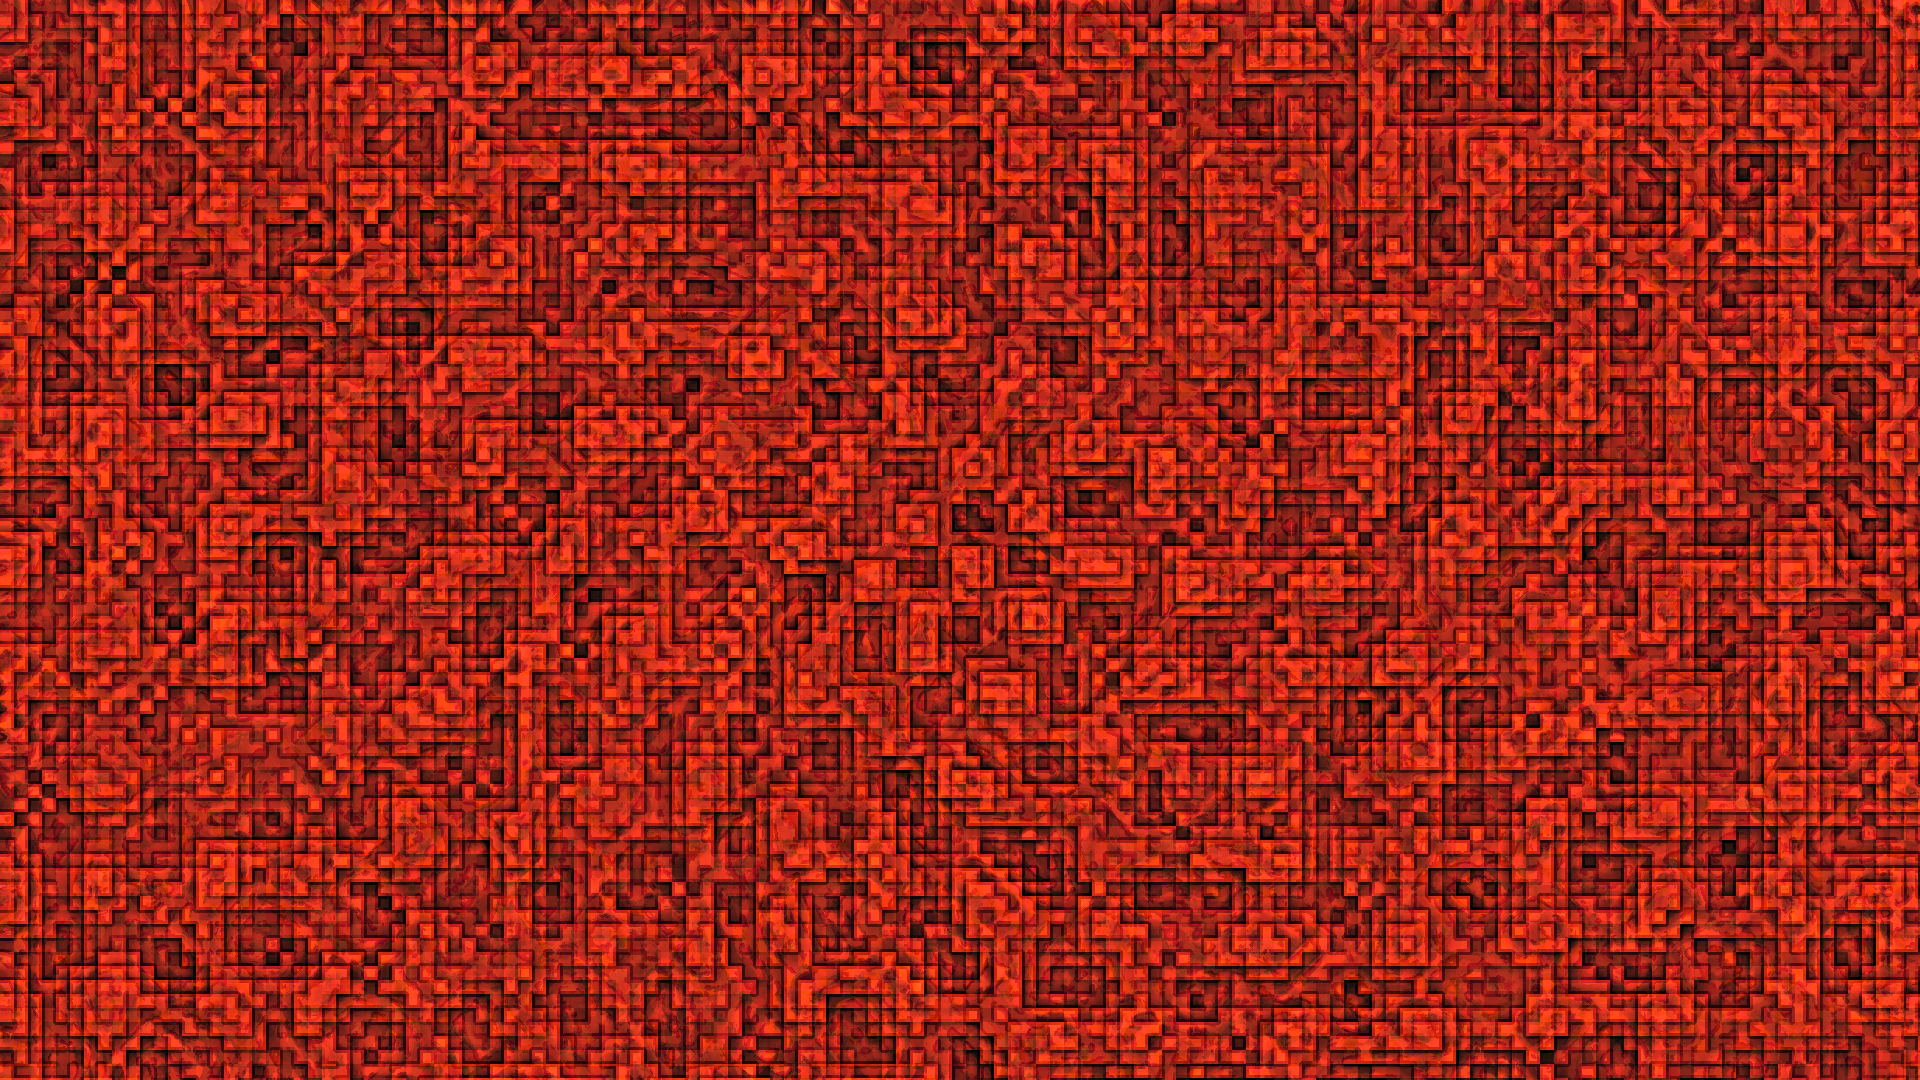 Redstone Block RTX Minecraft Texture by DGriever on DeviantArt